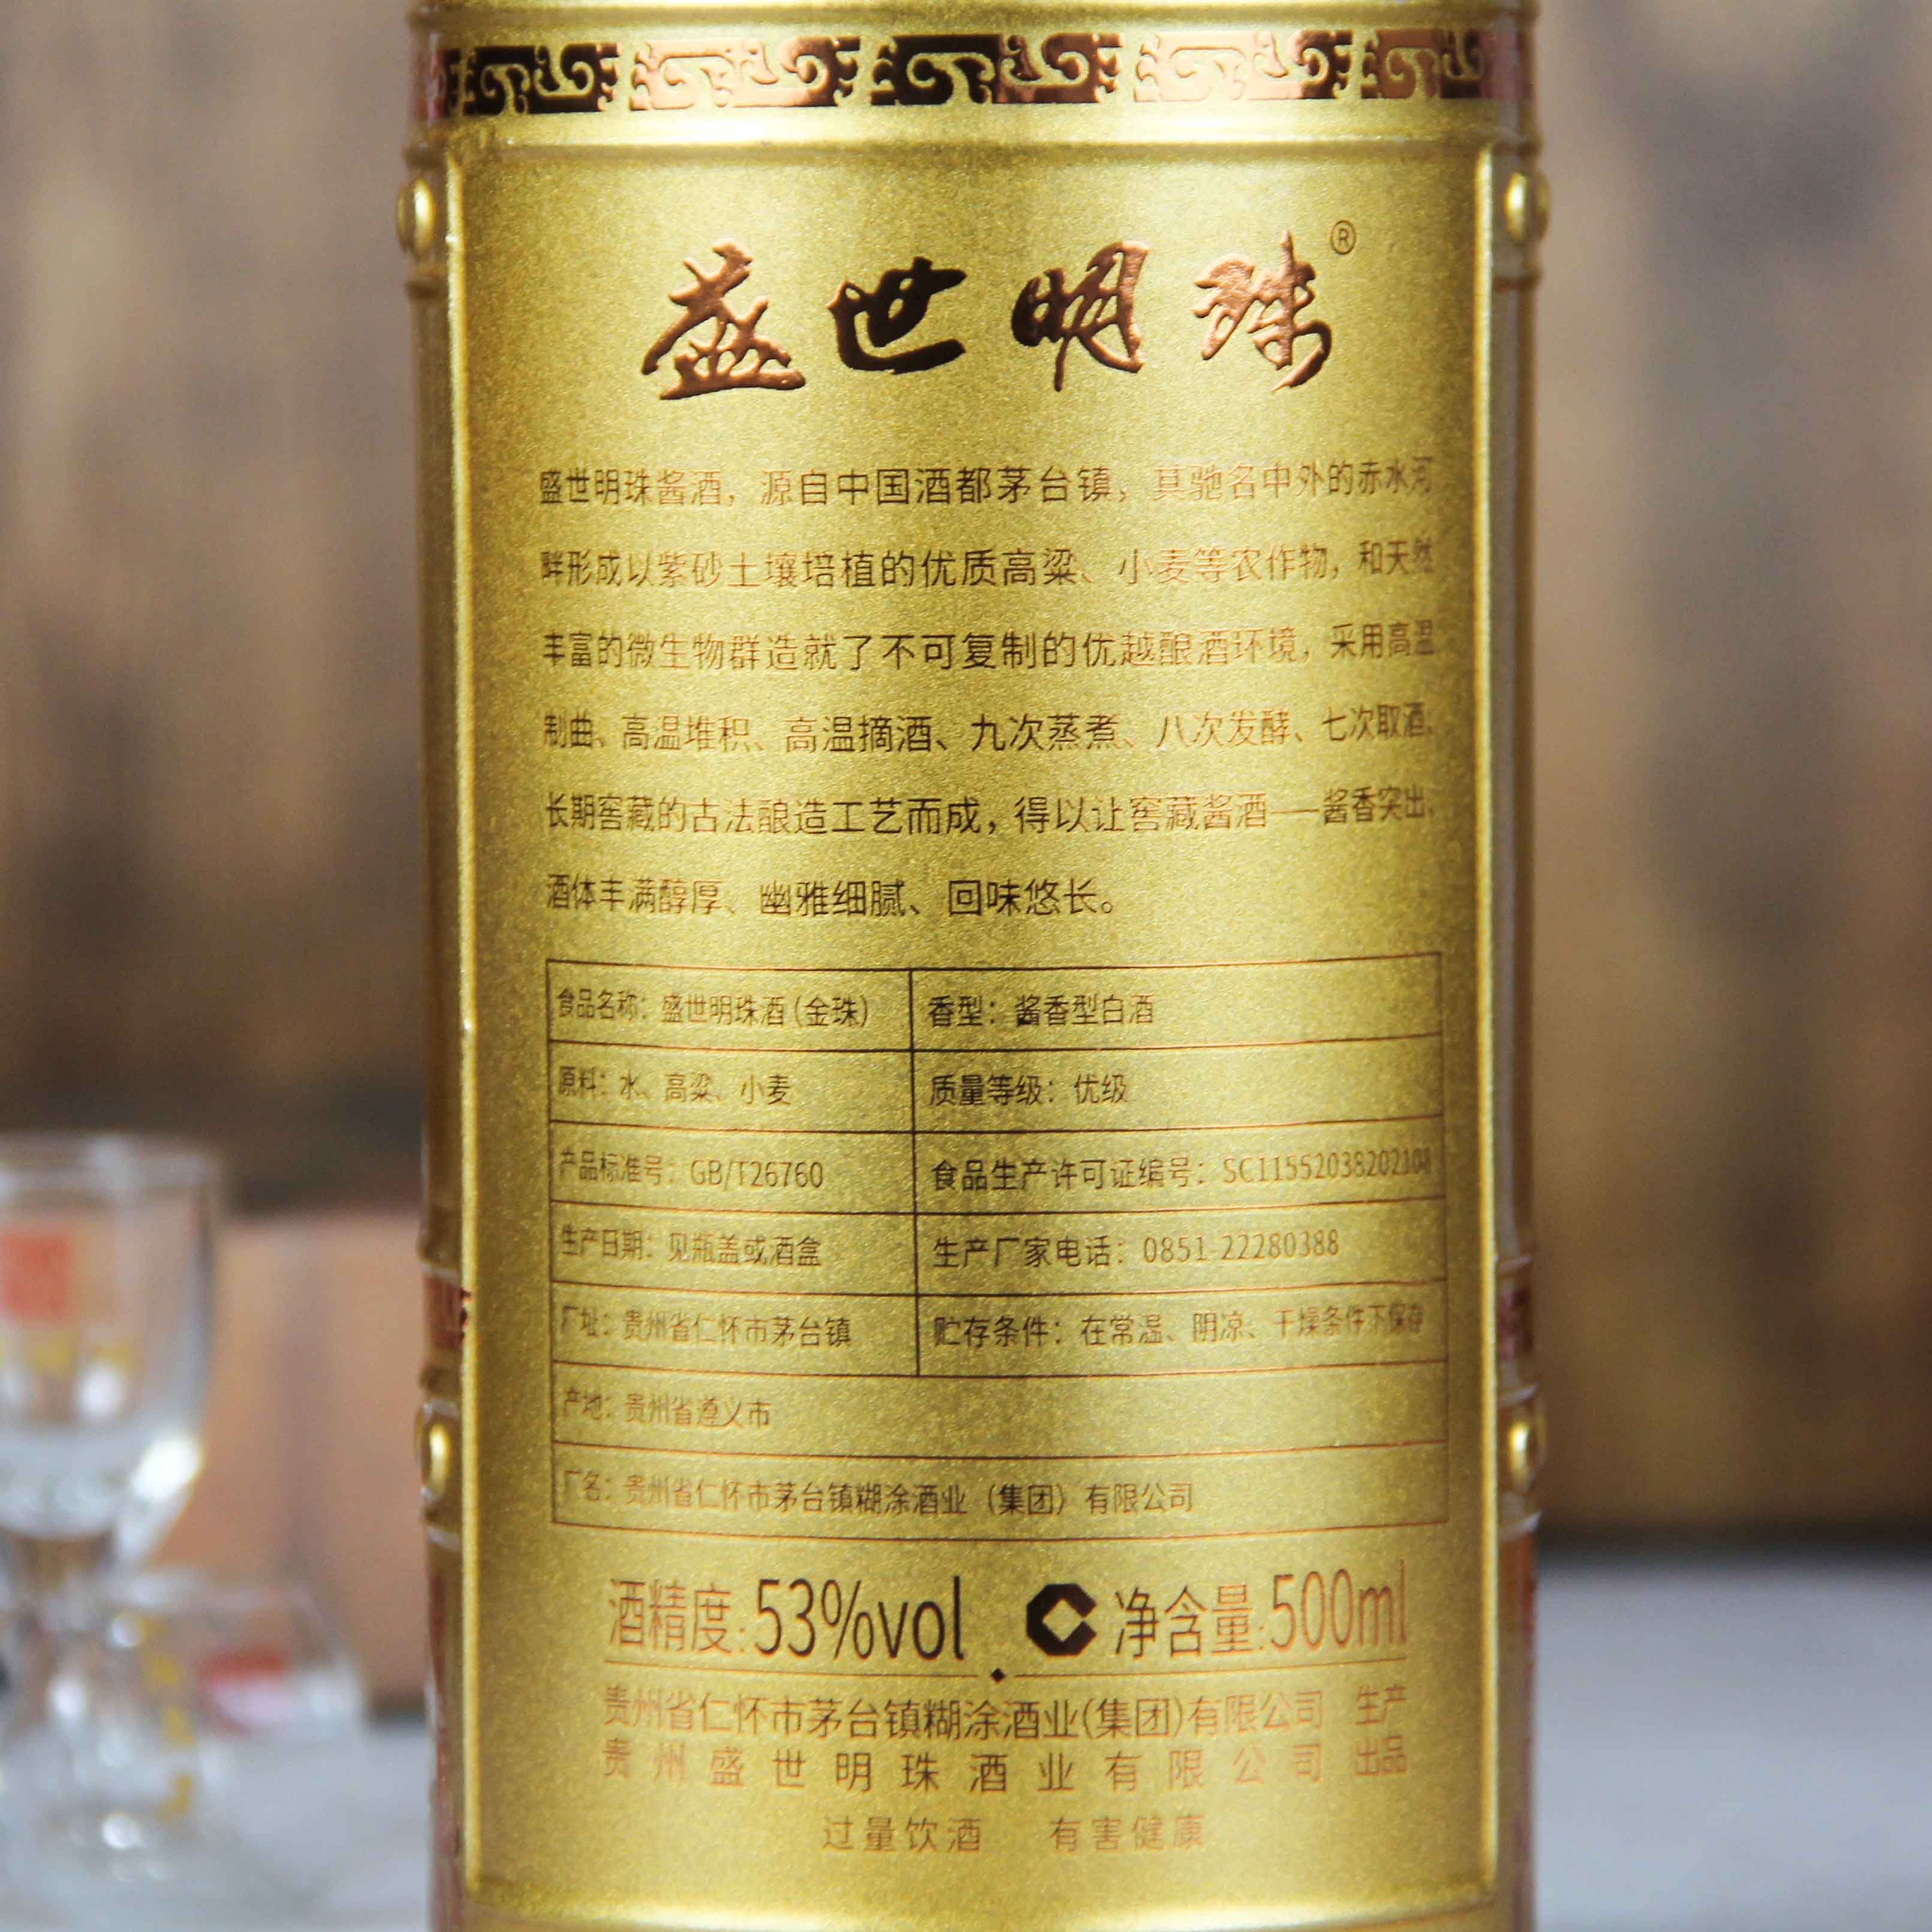 中国贵州茅台镇盛世金珠酱香型白酒